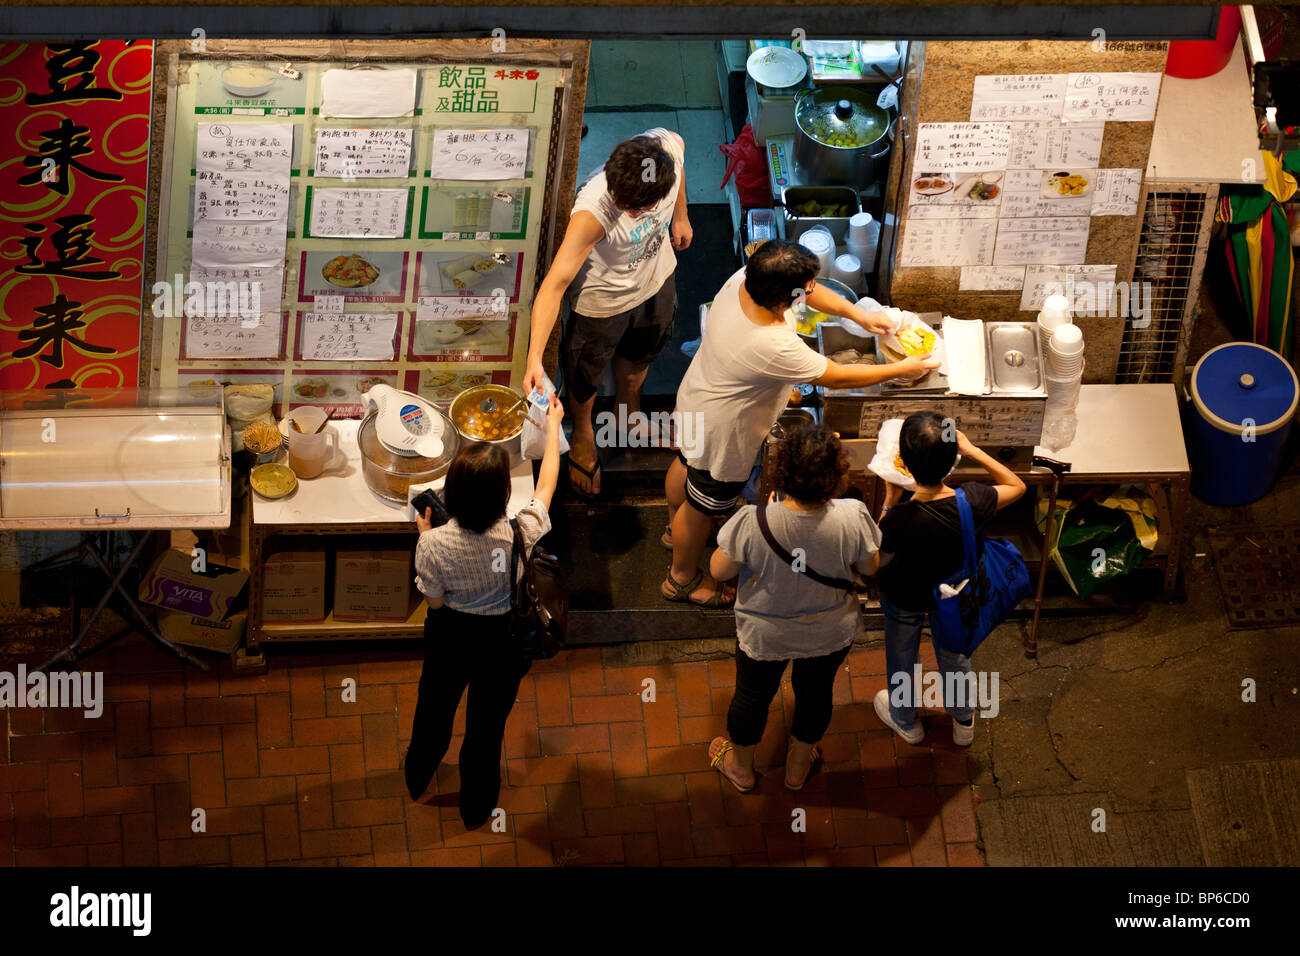 Un suburbano eatery en Hong Kong Foto de stock